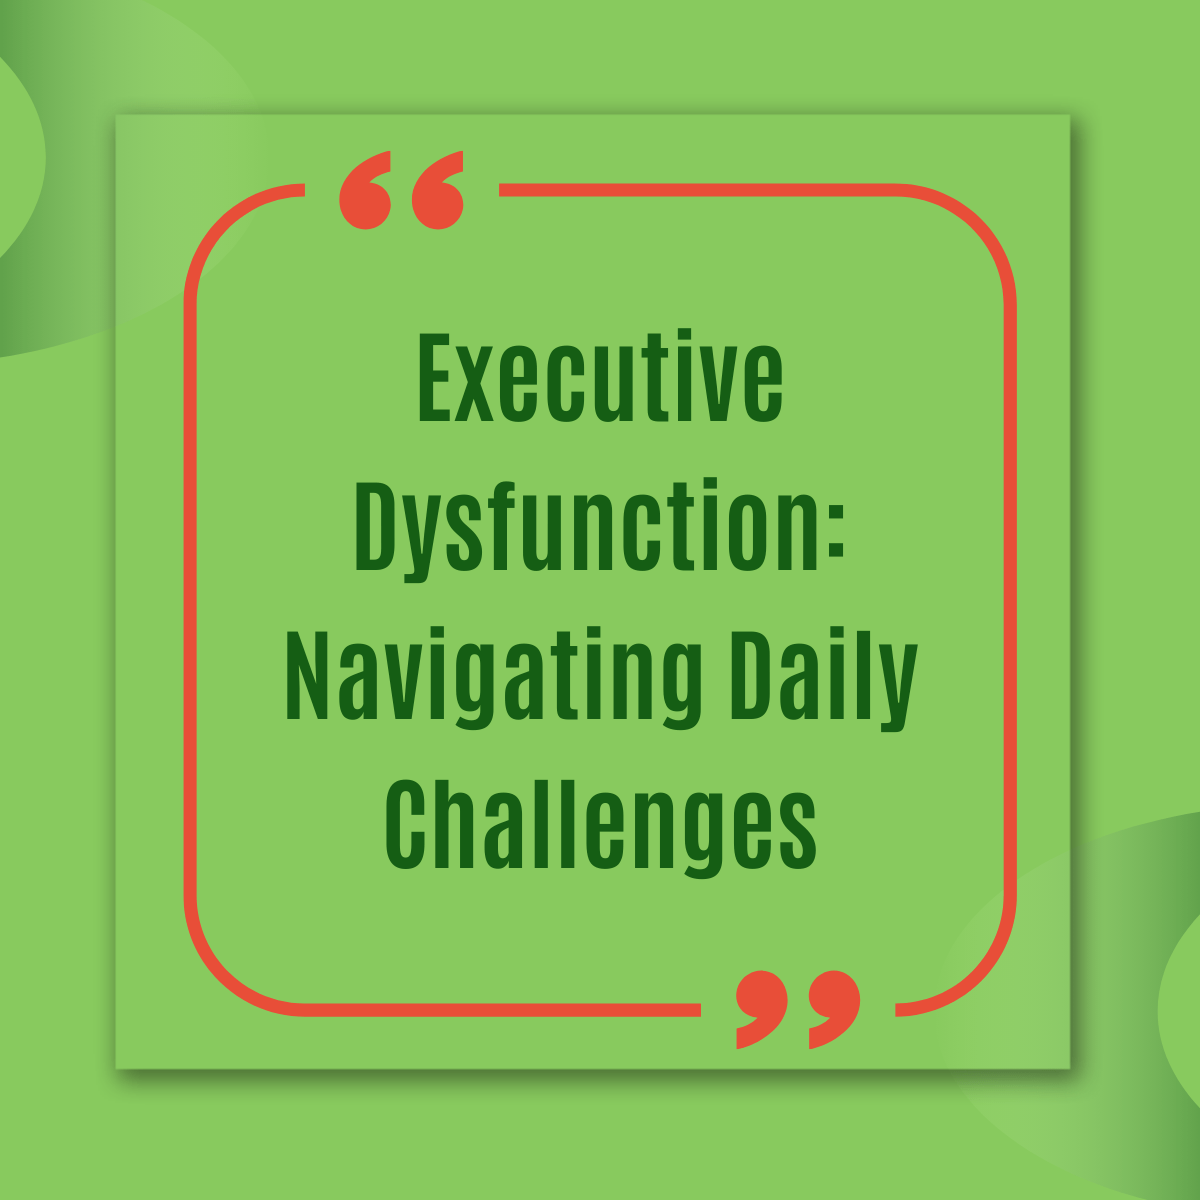 Executive Dysfunction